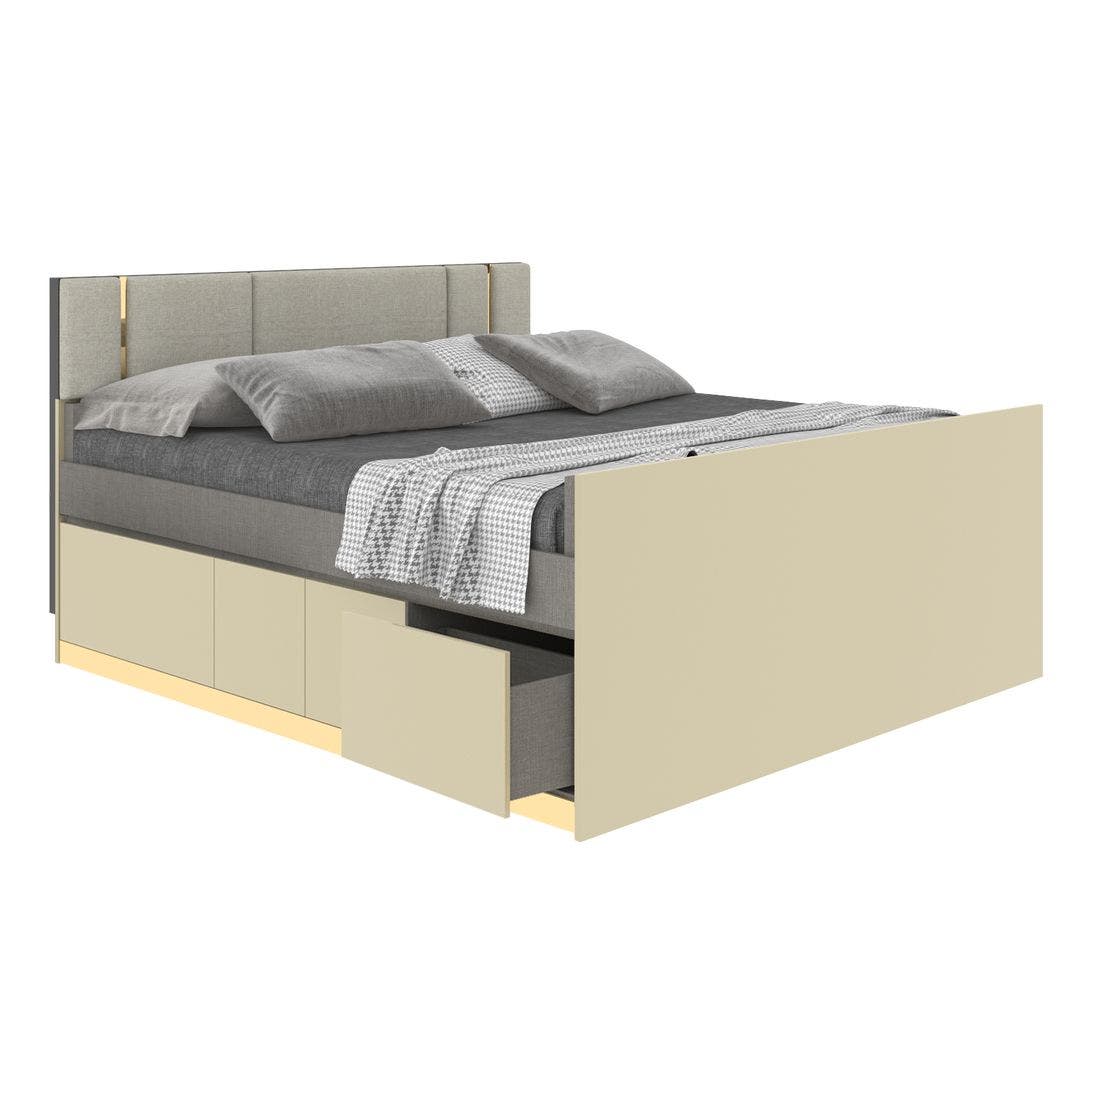 19203287-blisz-furniture-bedroom-furniture-beds-06